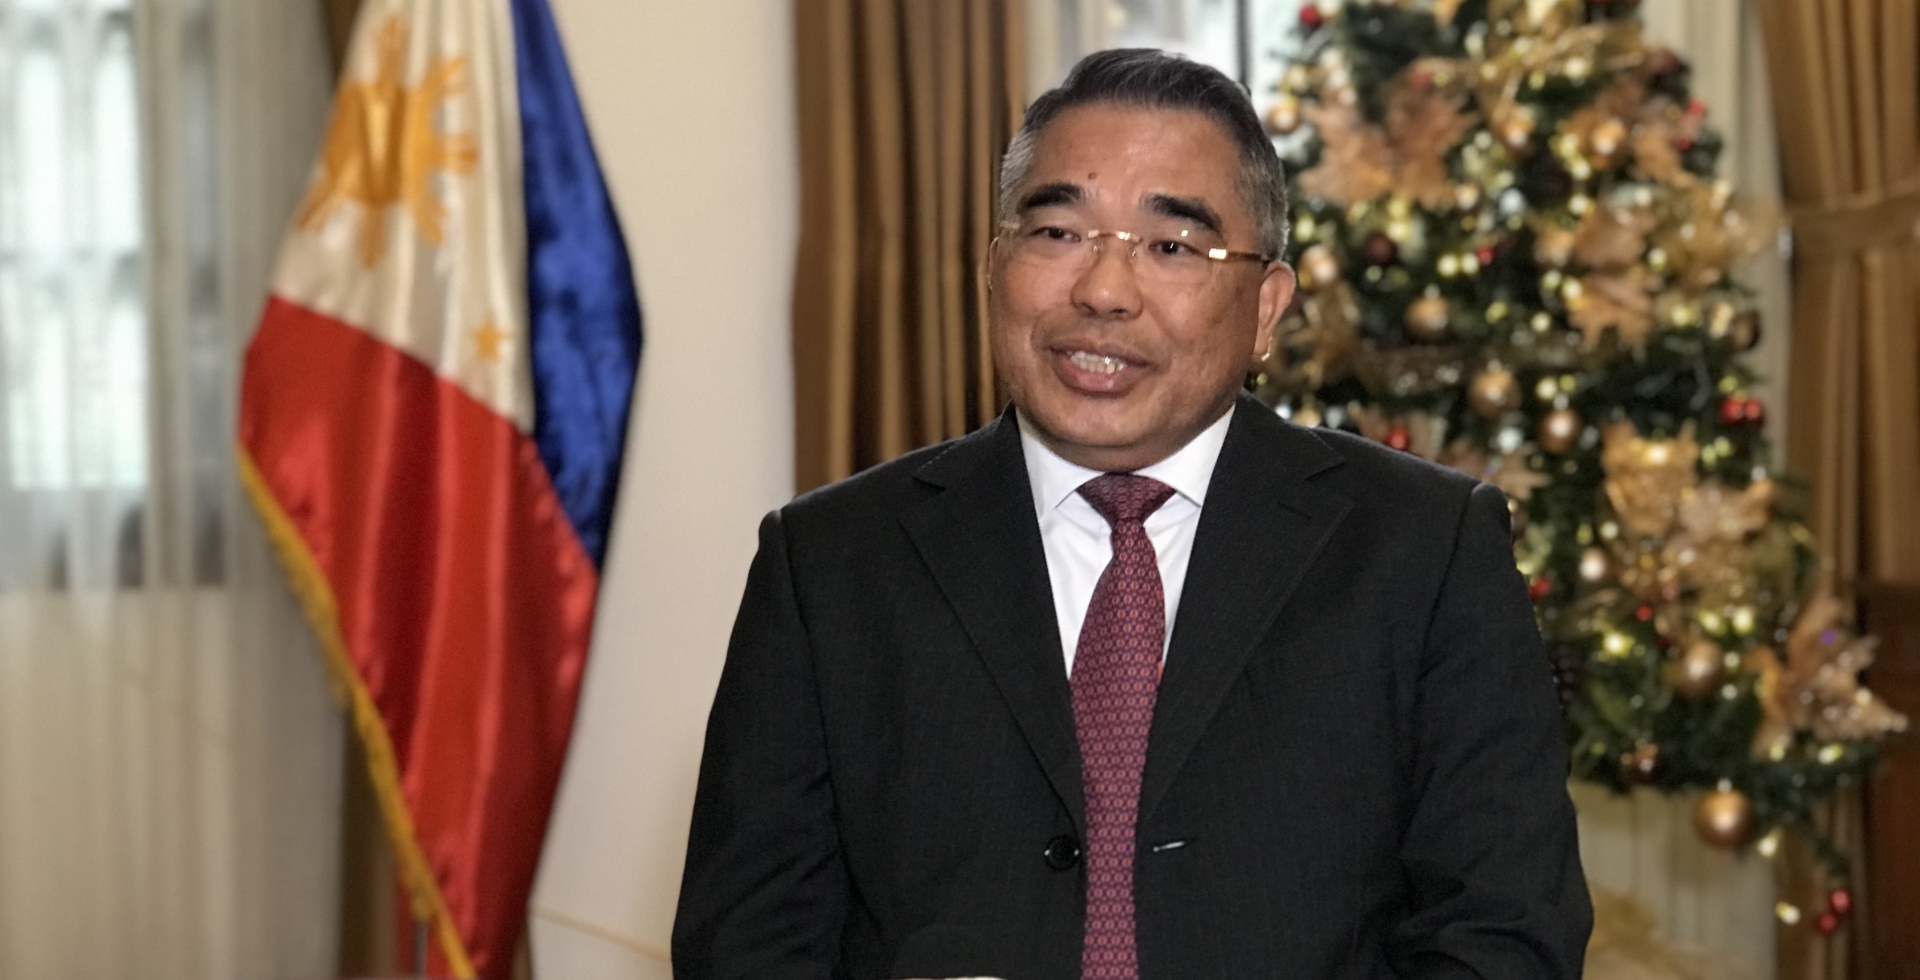 菲律宾驻越大使梅纳多•洛斯•巴诺斯•蒙塔莱格雷。